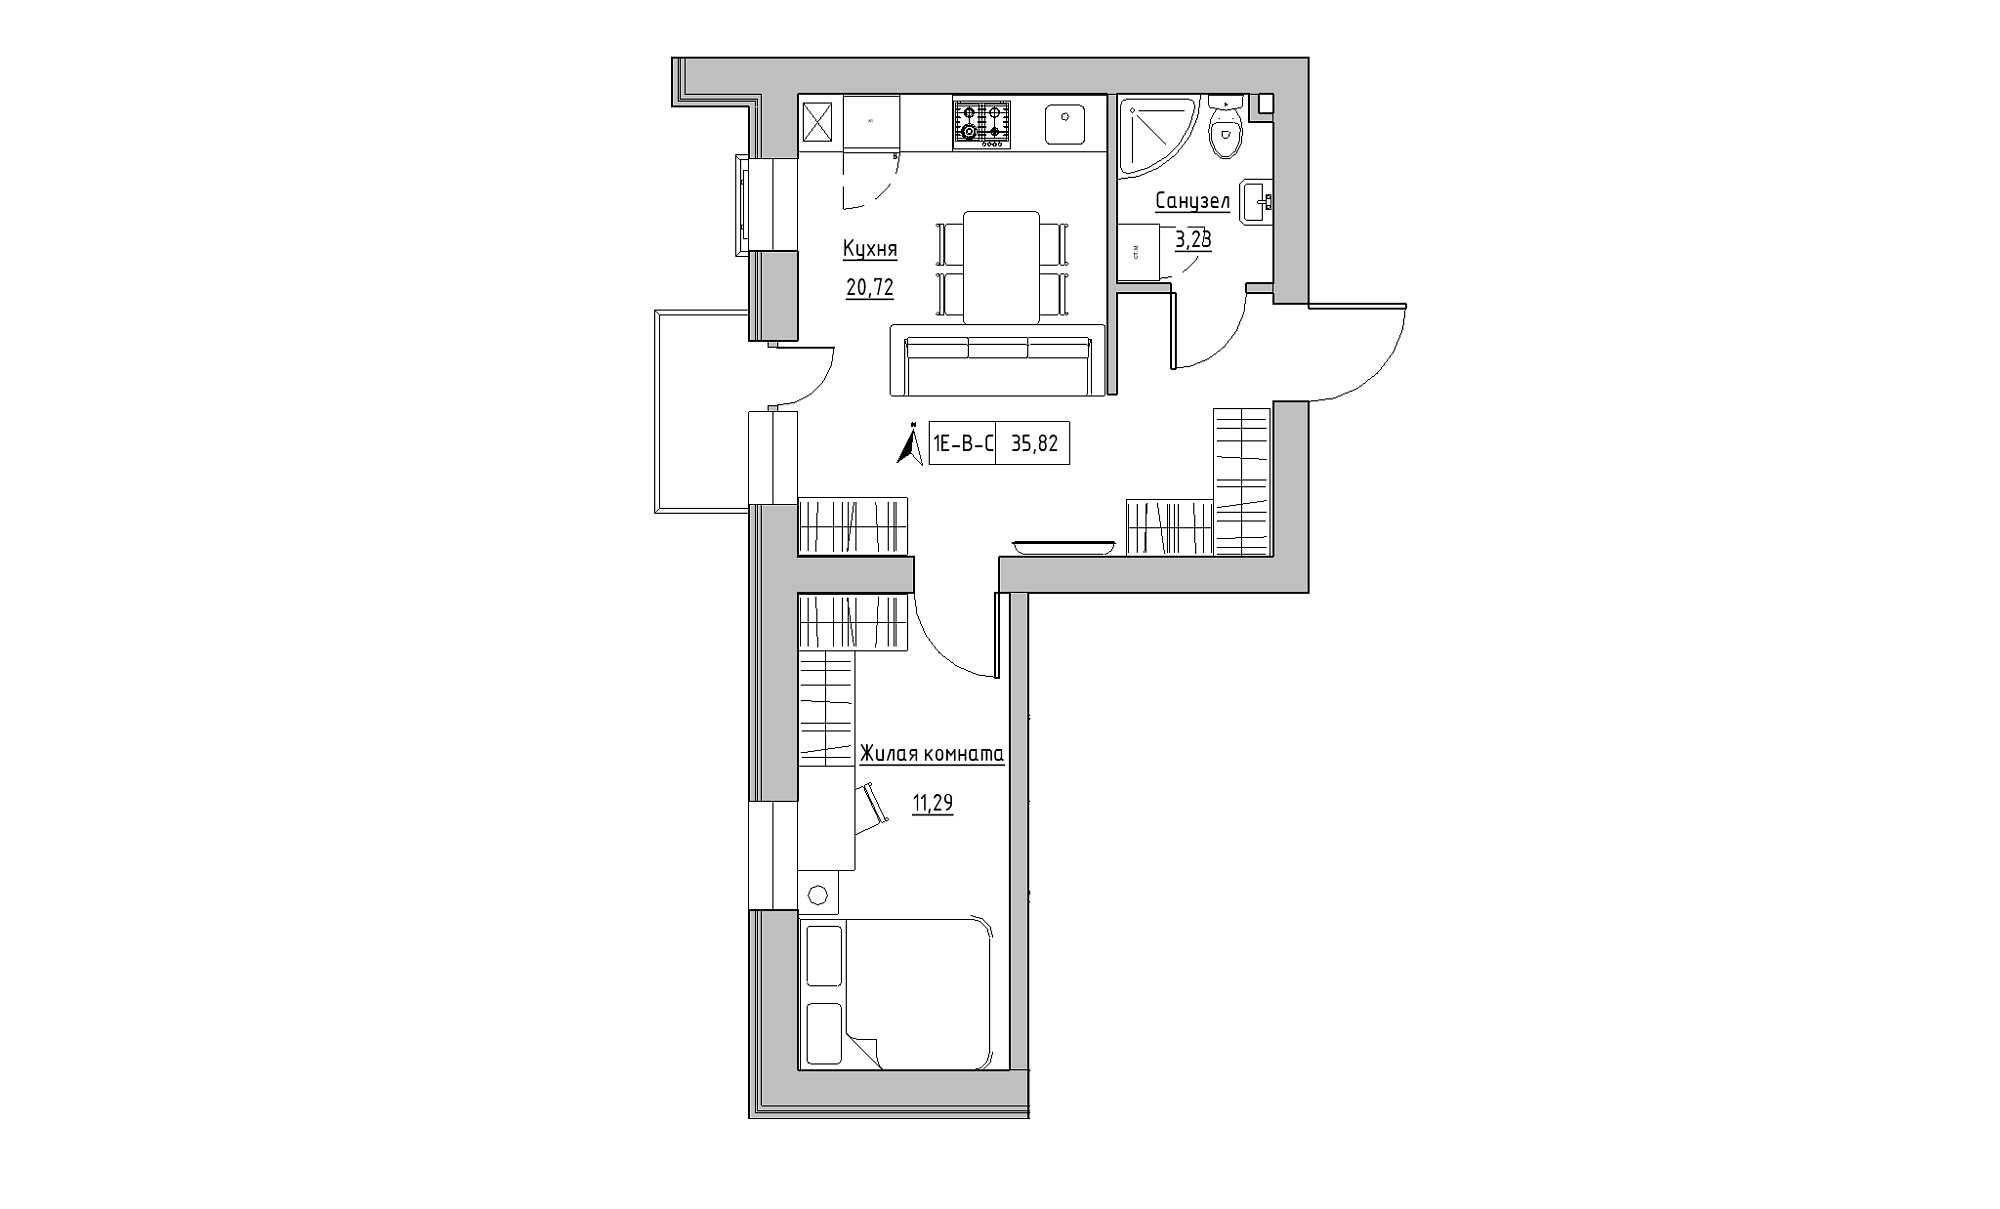 Планування 1-к квартира площею 35.82м2, KS-016-02/0009.